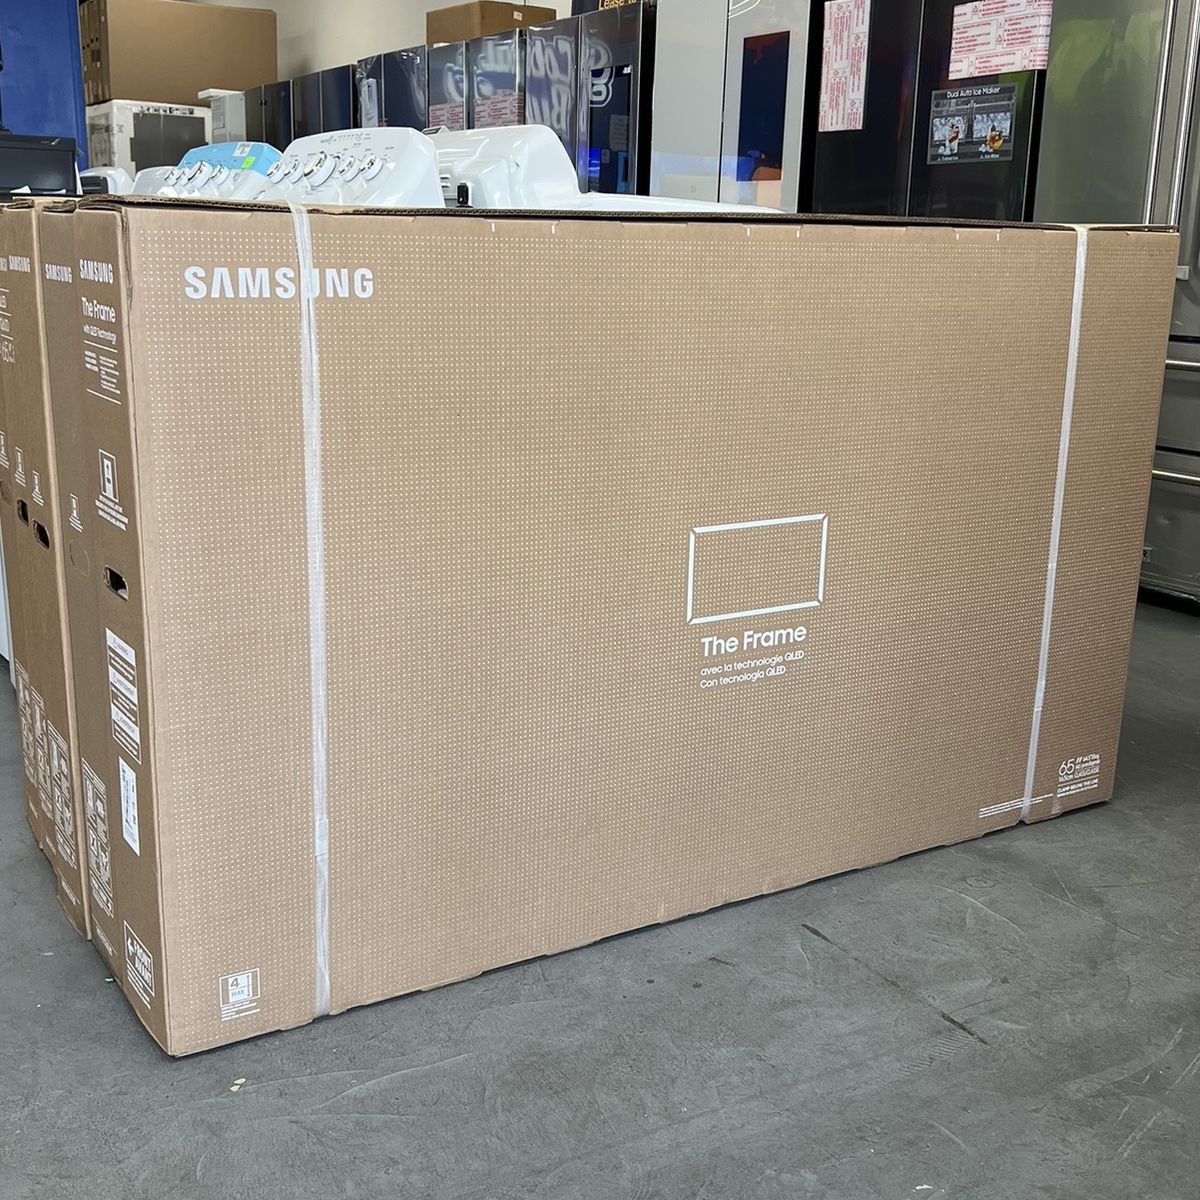 65 Samsung QLED The Frame 4K UHD Smart Tv